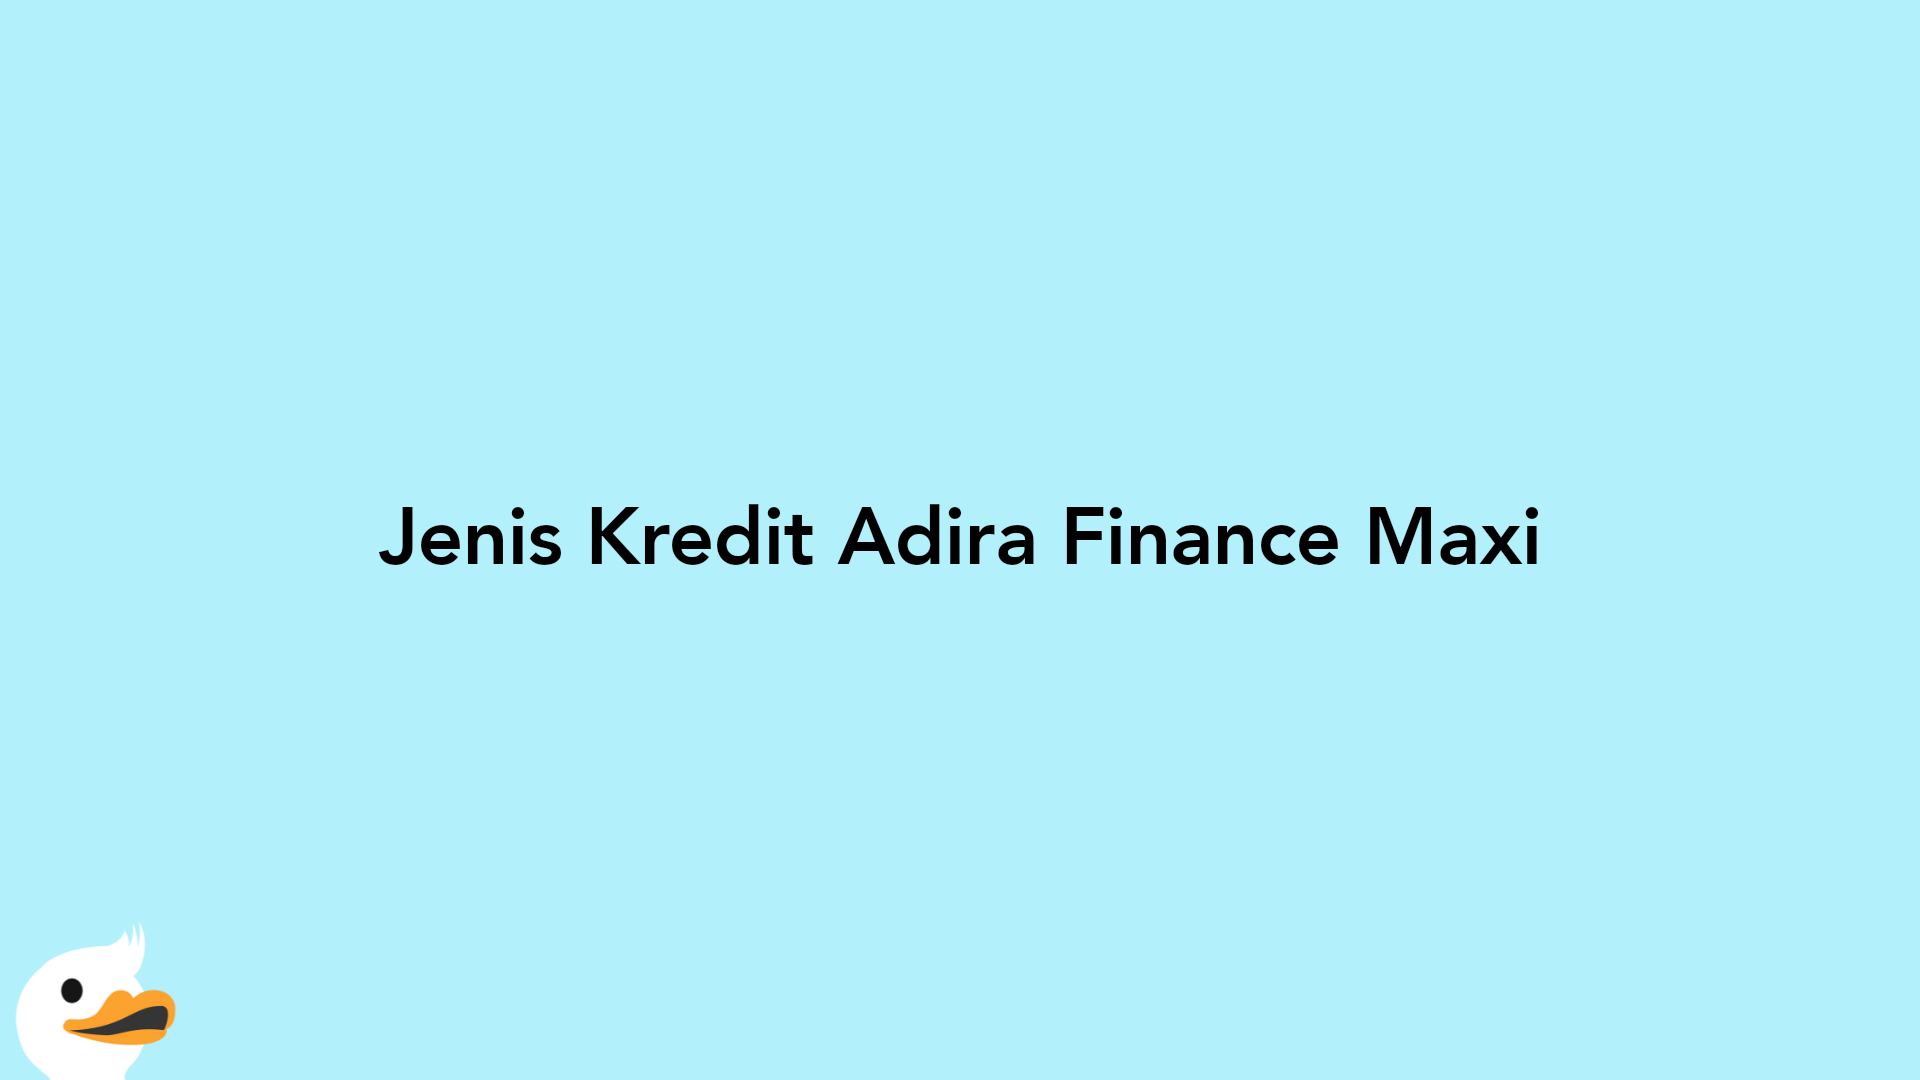 Jenis Kredit Adira Finance Maxi